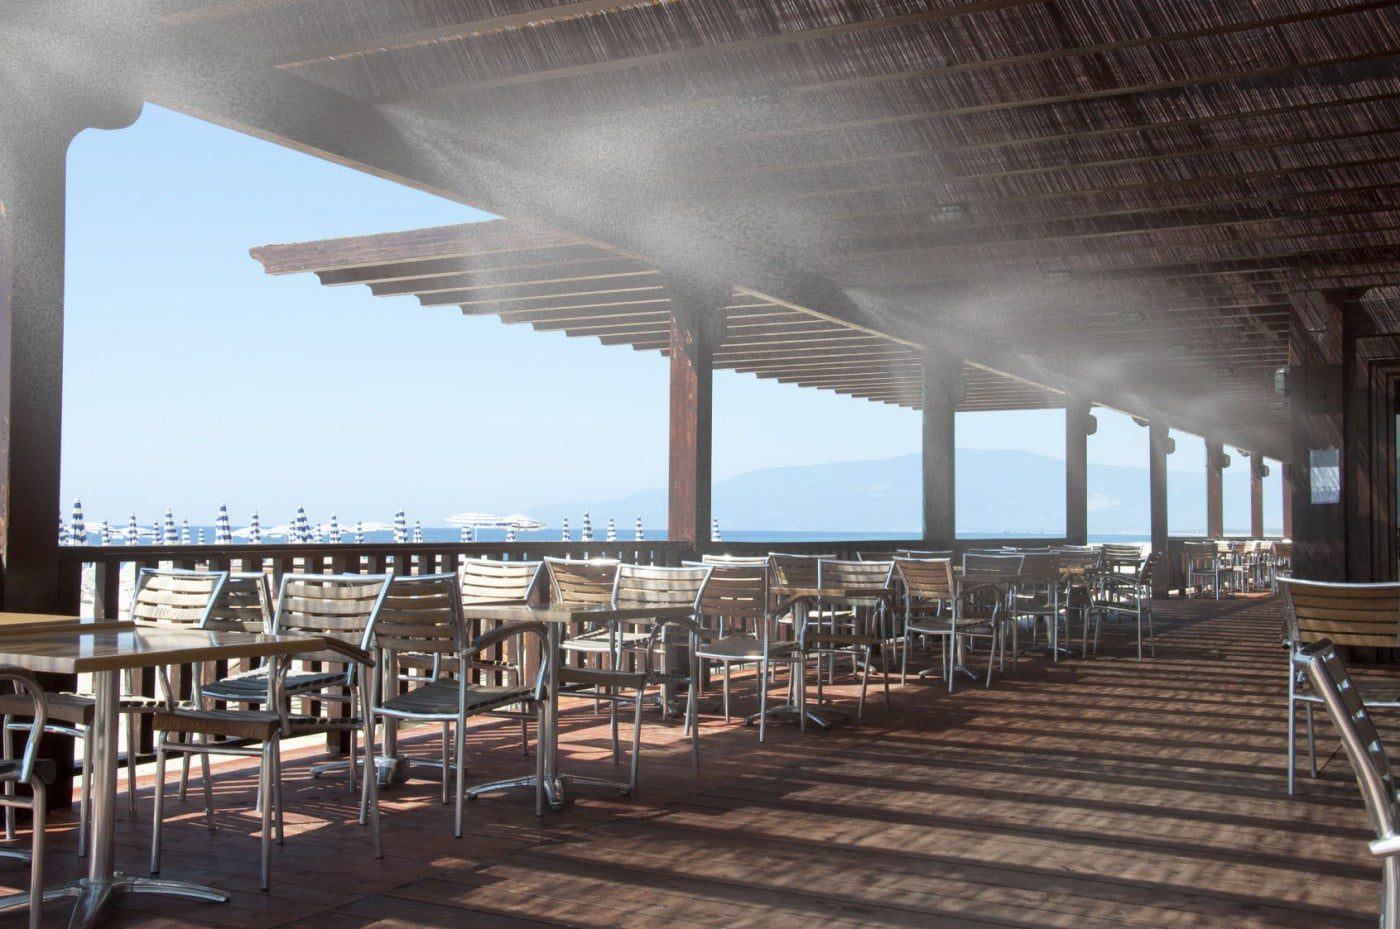 Lắp đặt máy phun sương ở nhà hàng vừa làm mát hiệu quả mà còn rất tiết kiệm điện và nước.